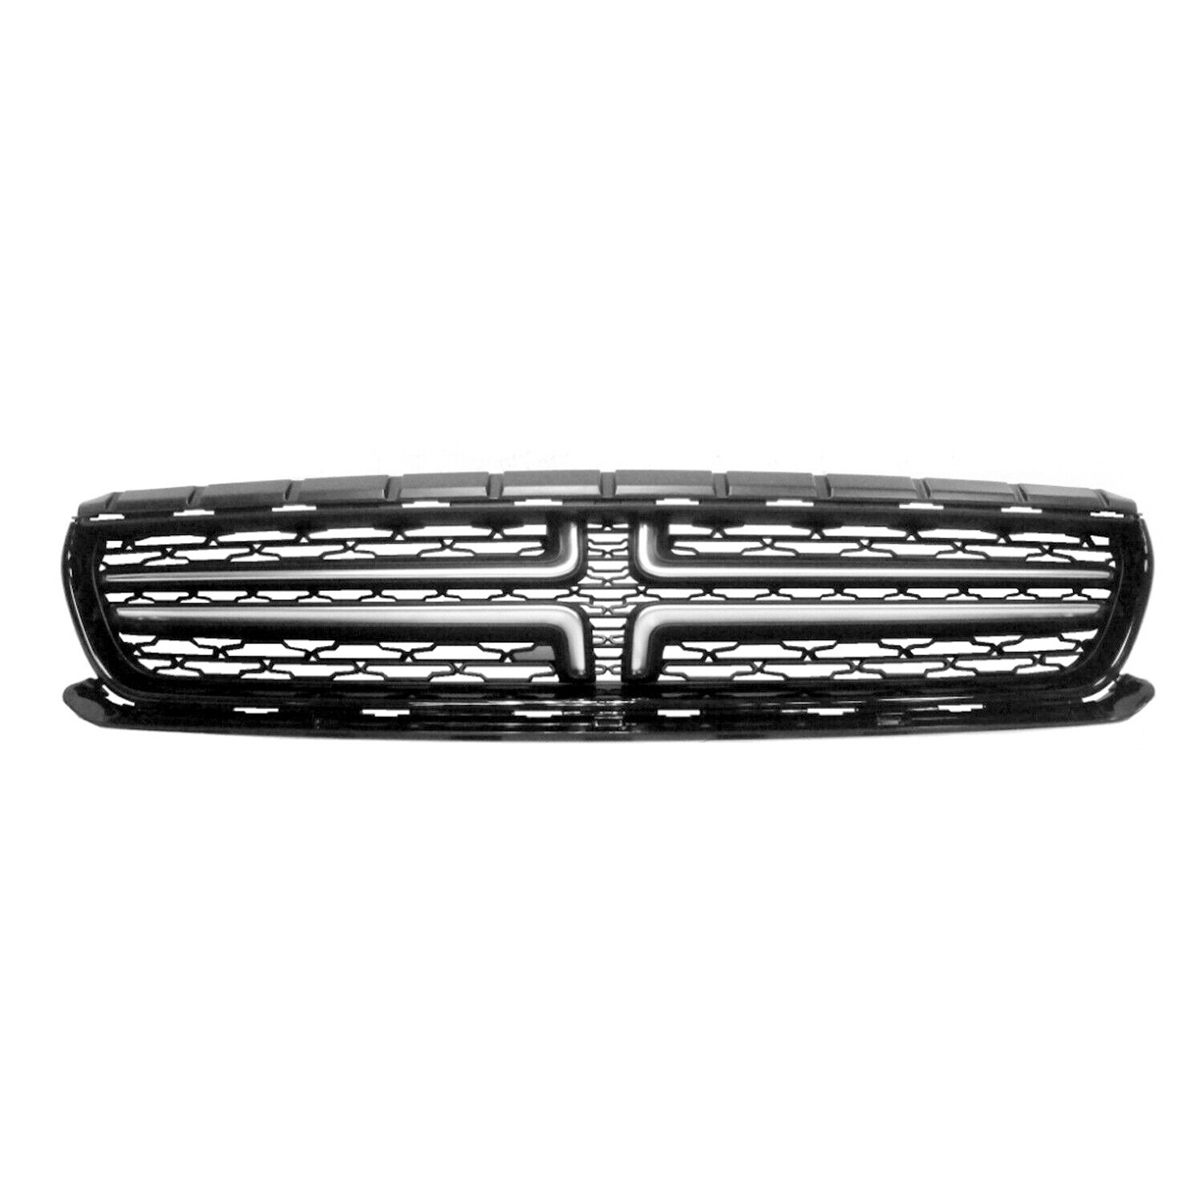 

Black & Silver ABS Решетка радиатора переднего верхнего бампера для Dodge Charger 2015-2018